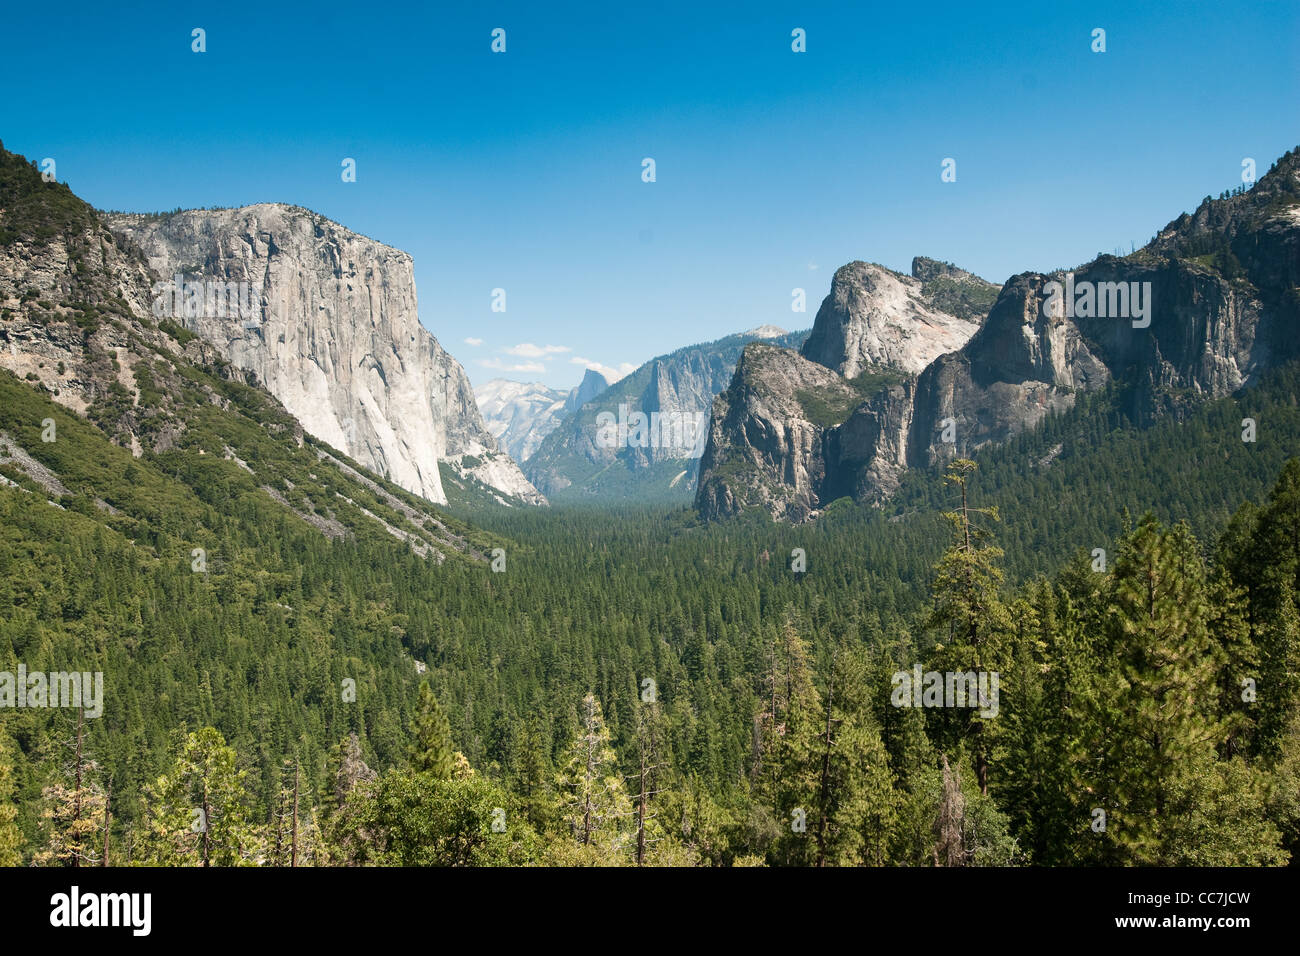 Vue de tunnel dans la région de Yosemite National Park, California, USA Banque D'Images